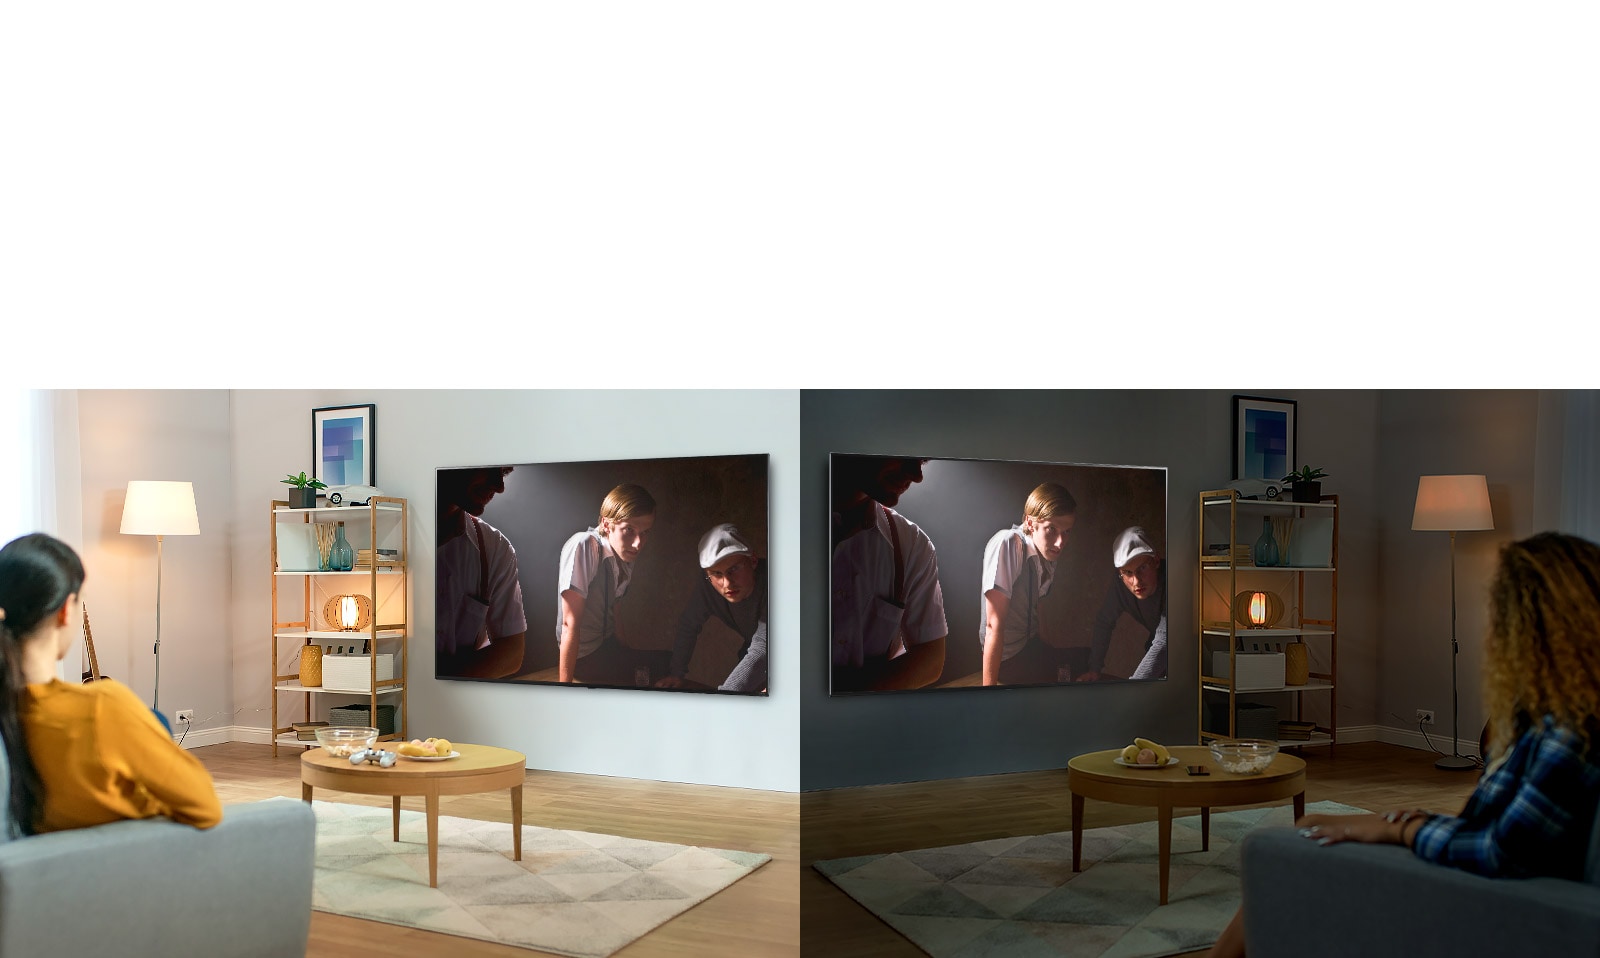 בשני חדרי סלון המהווים תמונת ראי, שתי נשים צופות באותה סצנה בטלוויזיה בתנאי בהירות שונים